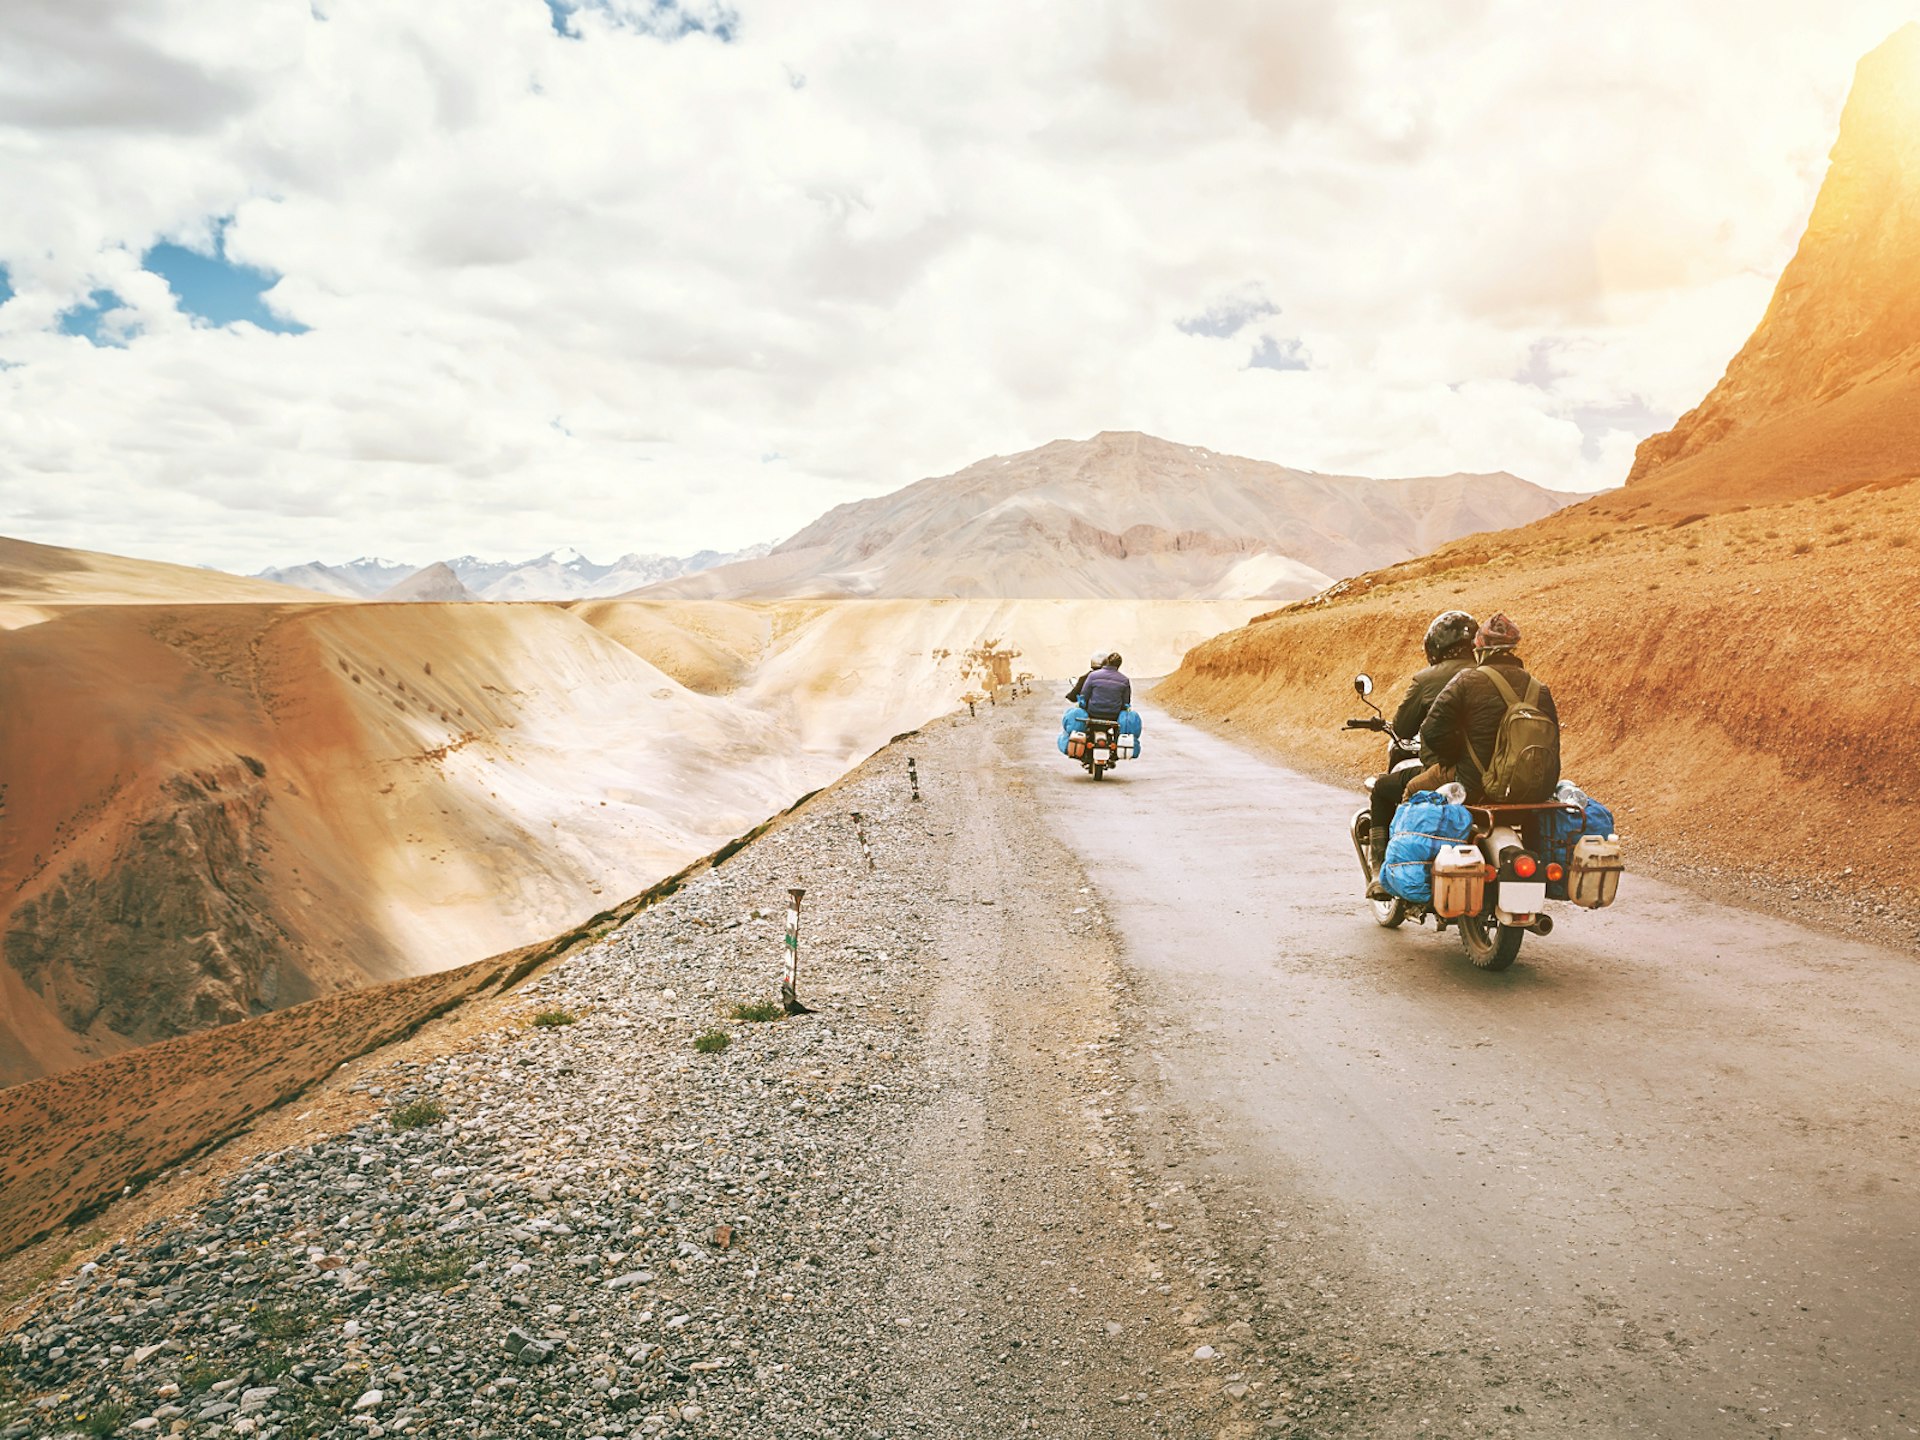 Riding motorbikes through the Indian Himalayas